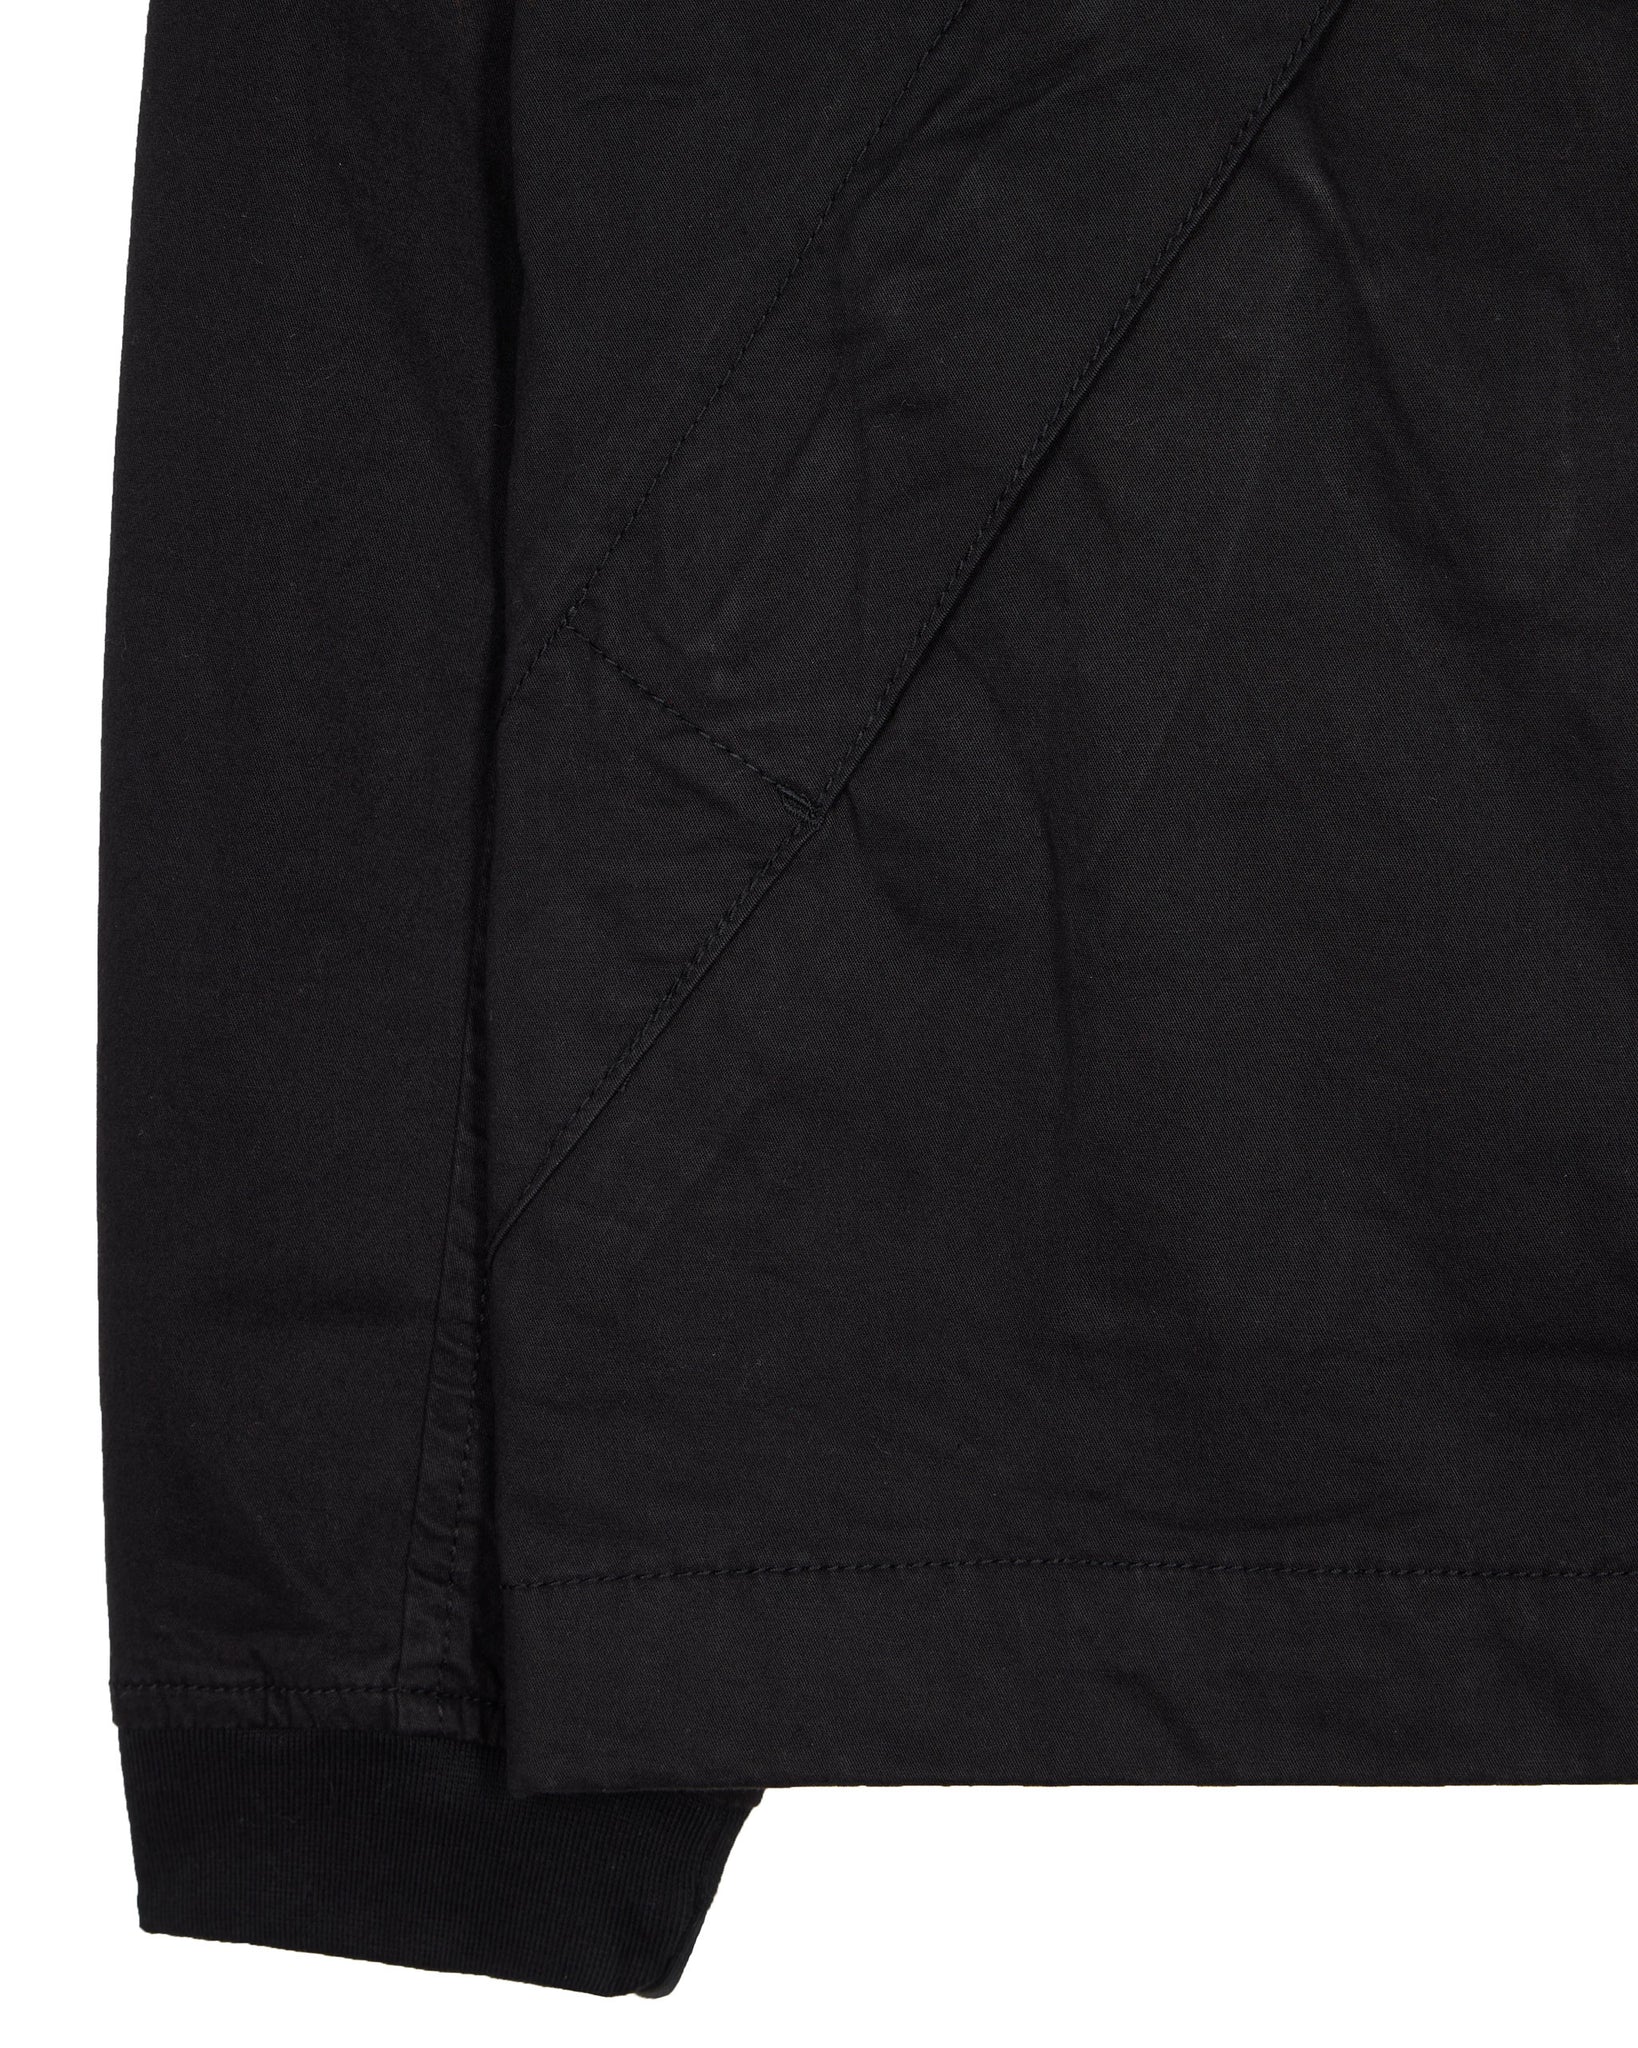 LaMotta Over-Shirt Black